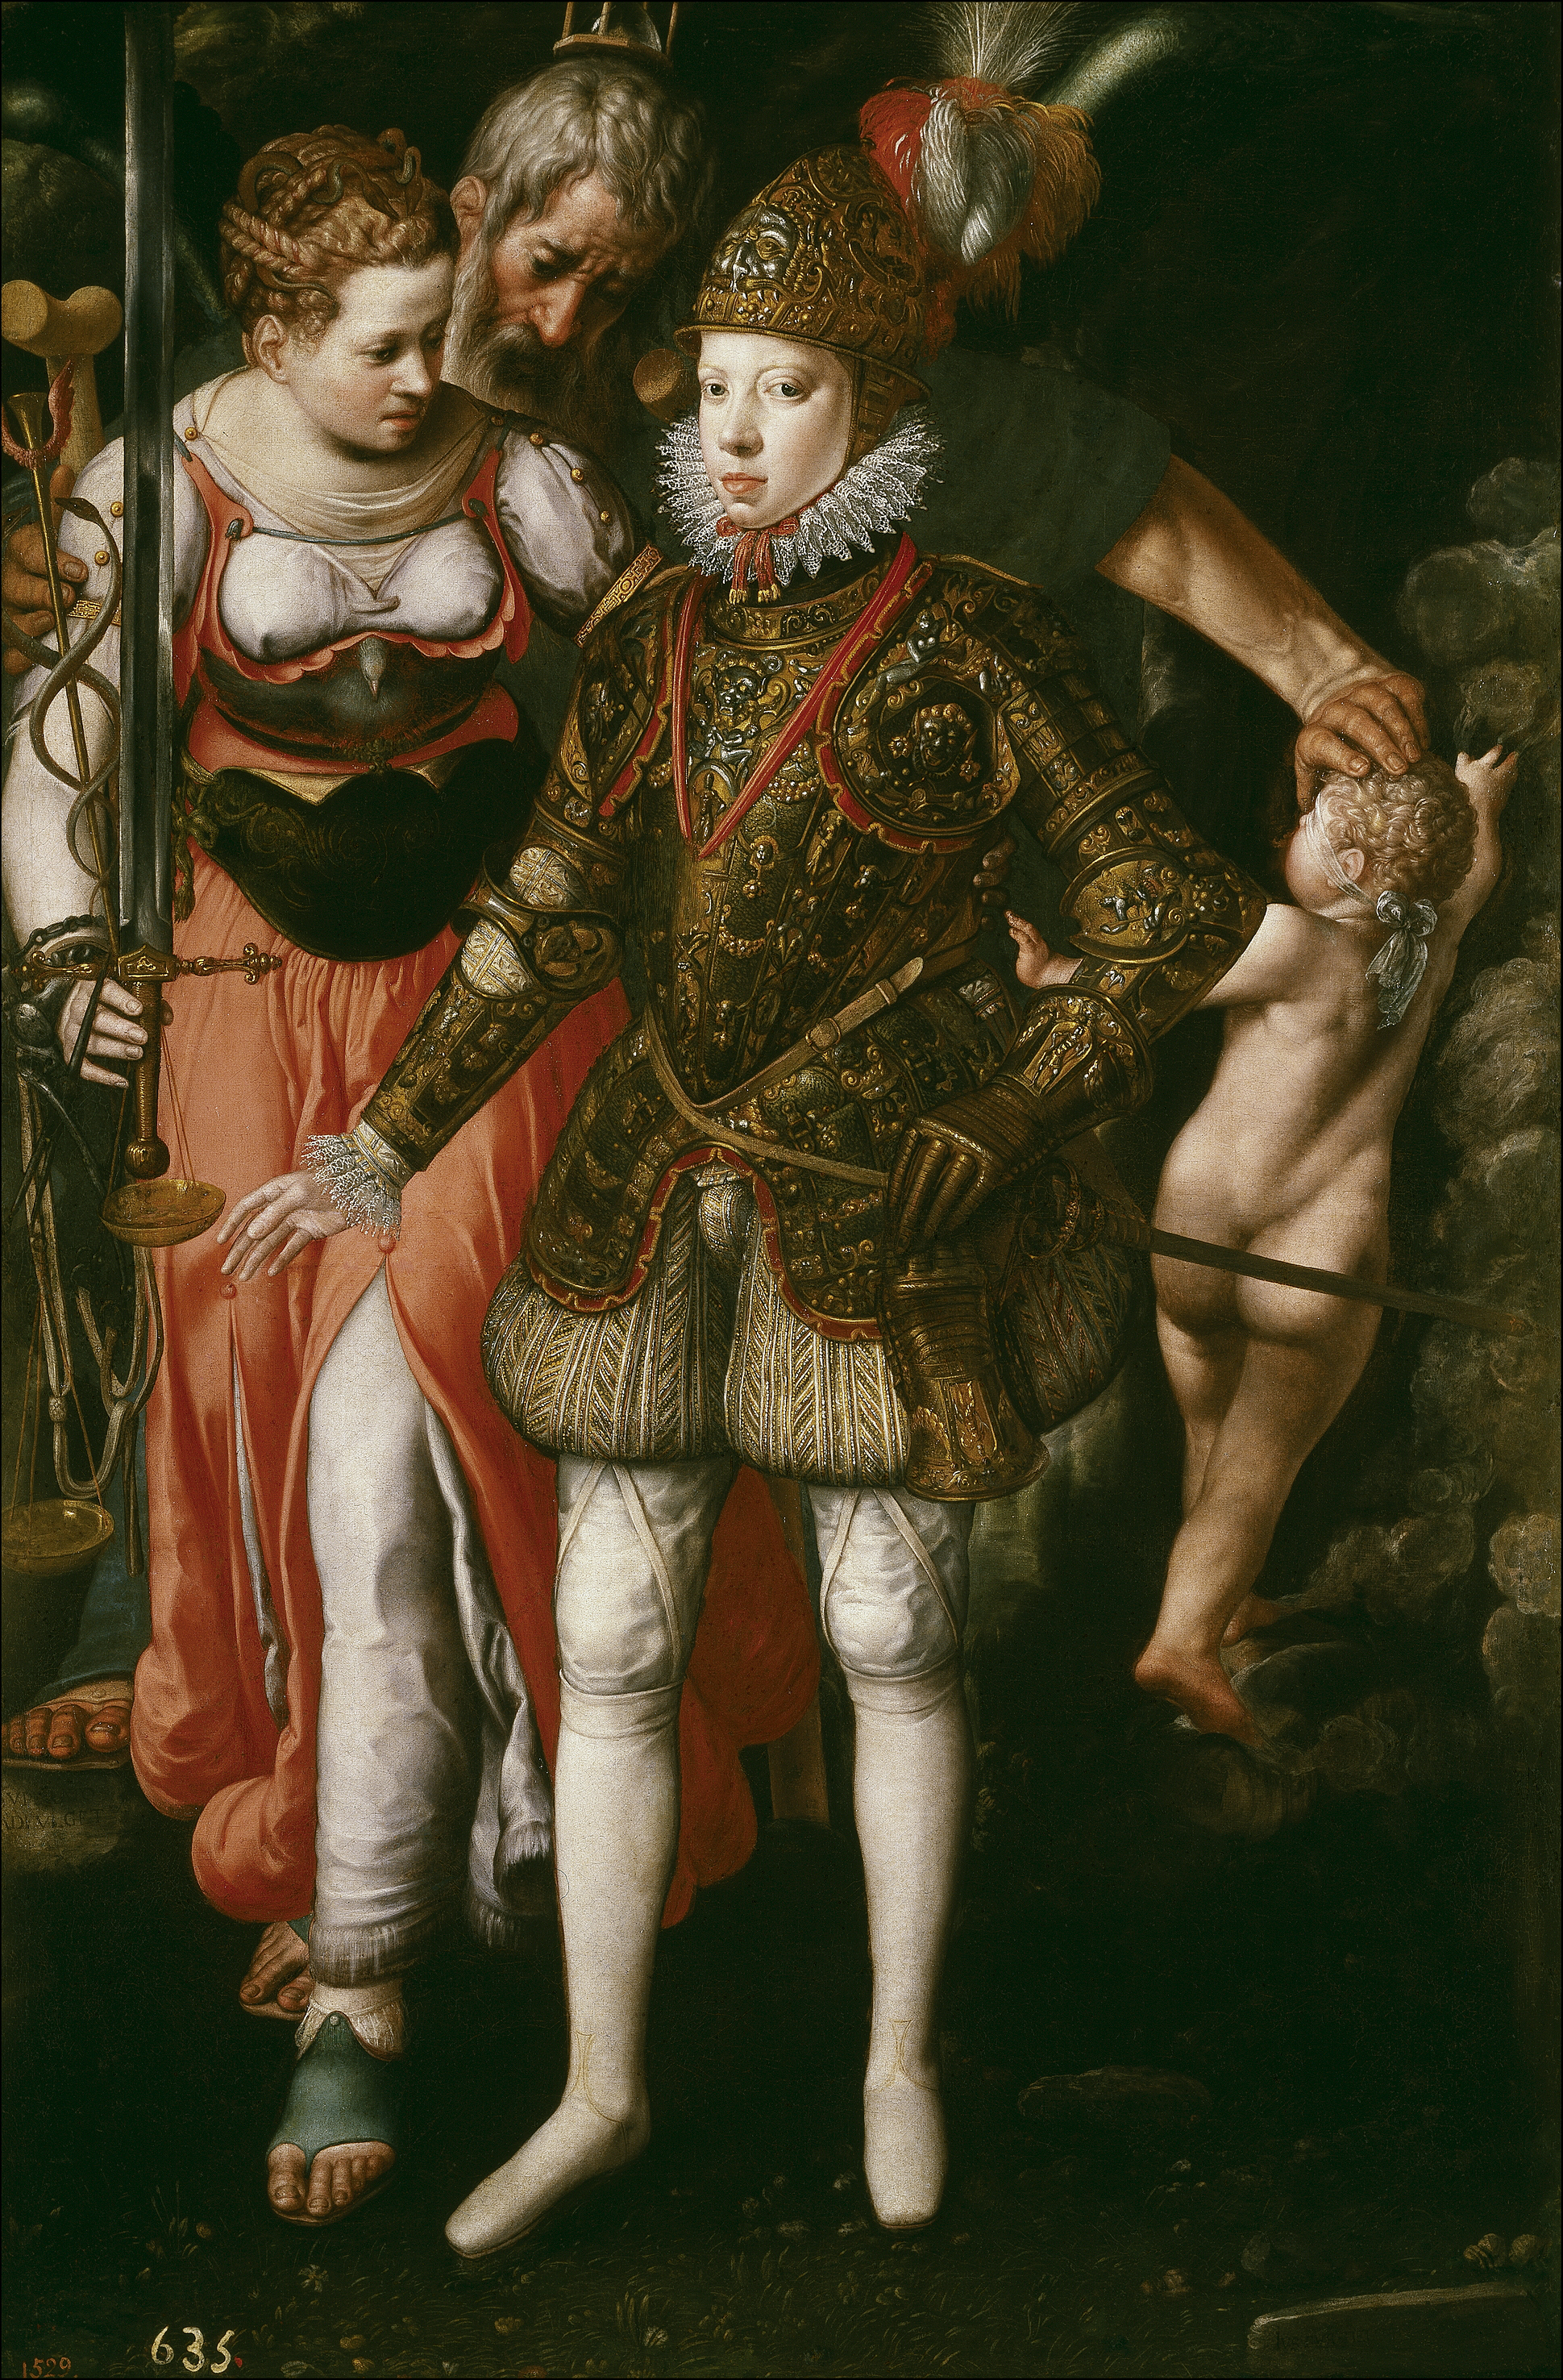 Los hijos malogrados de Felipe II Justus-tiel-alegorc3ada-de-la-educacic3b3n-del-monarca-hispano-felipe-iii-de-espac3b1a-1590-museo-del-prado-madrid